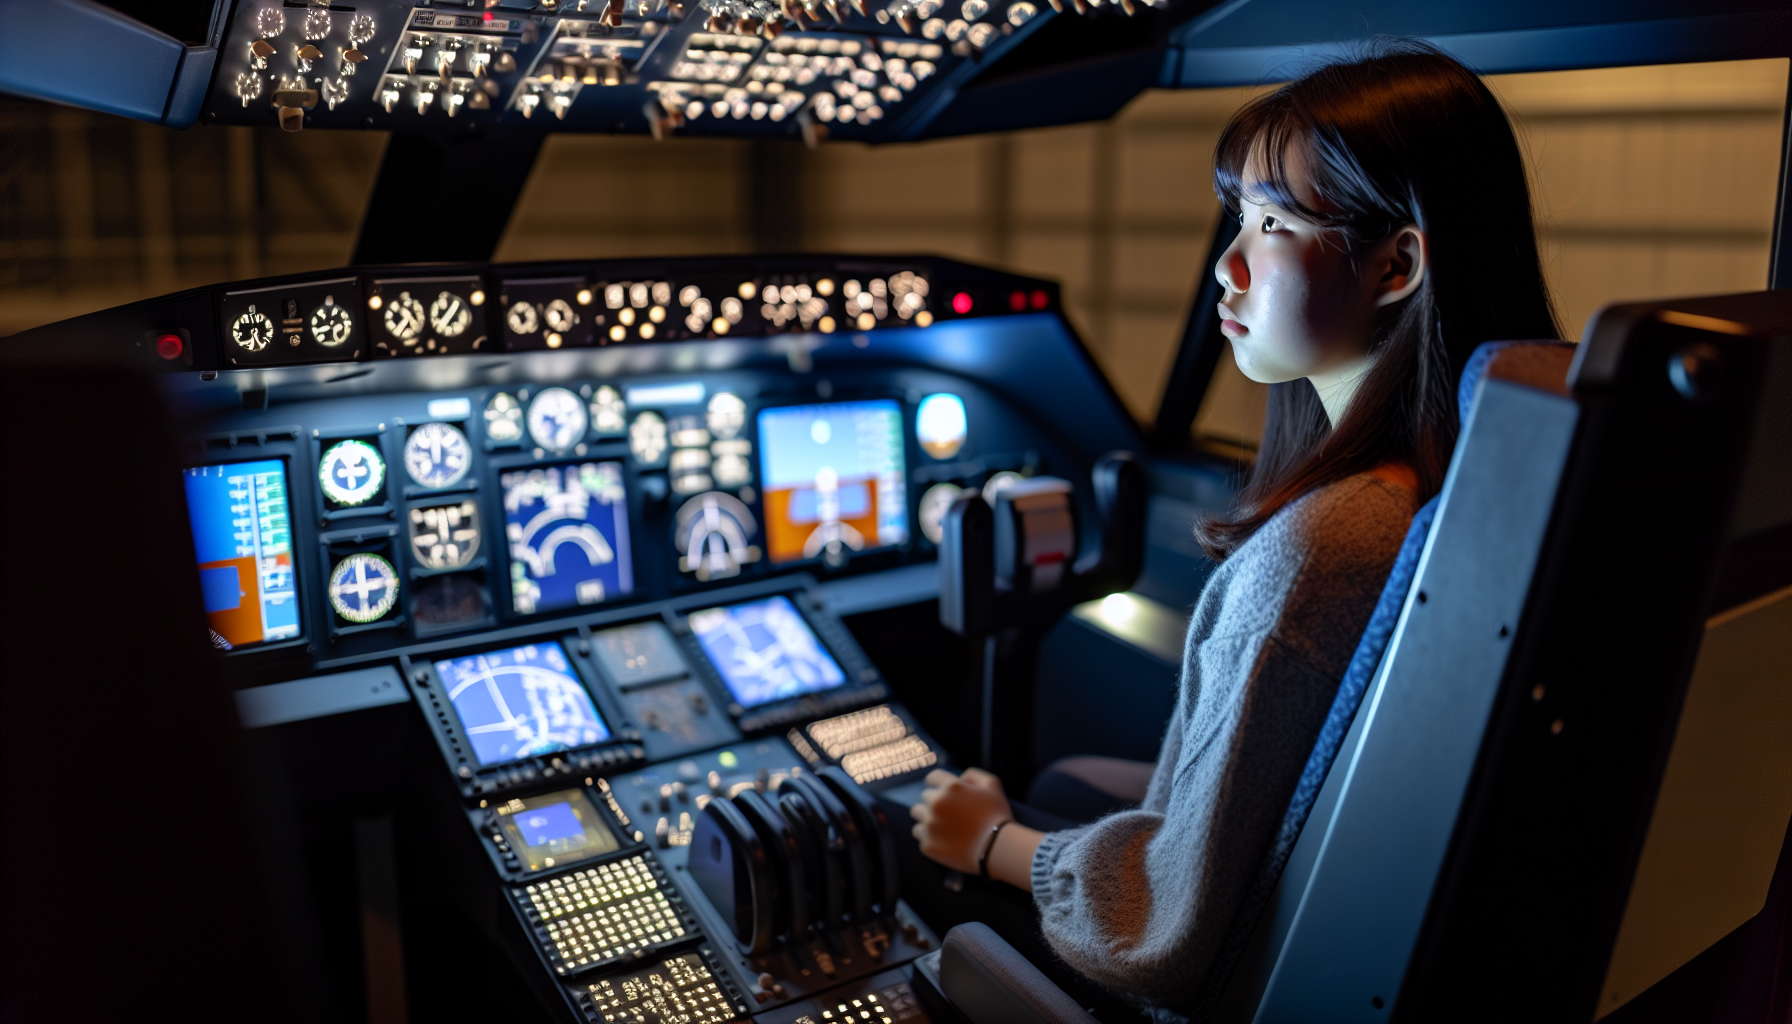 Utilizing flight simulators in instrument rating training